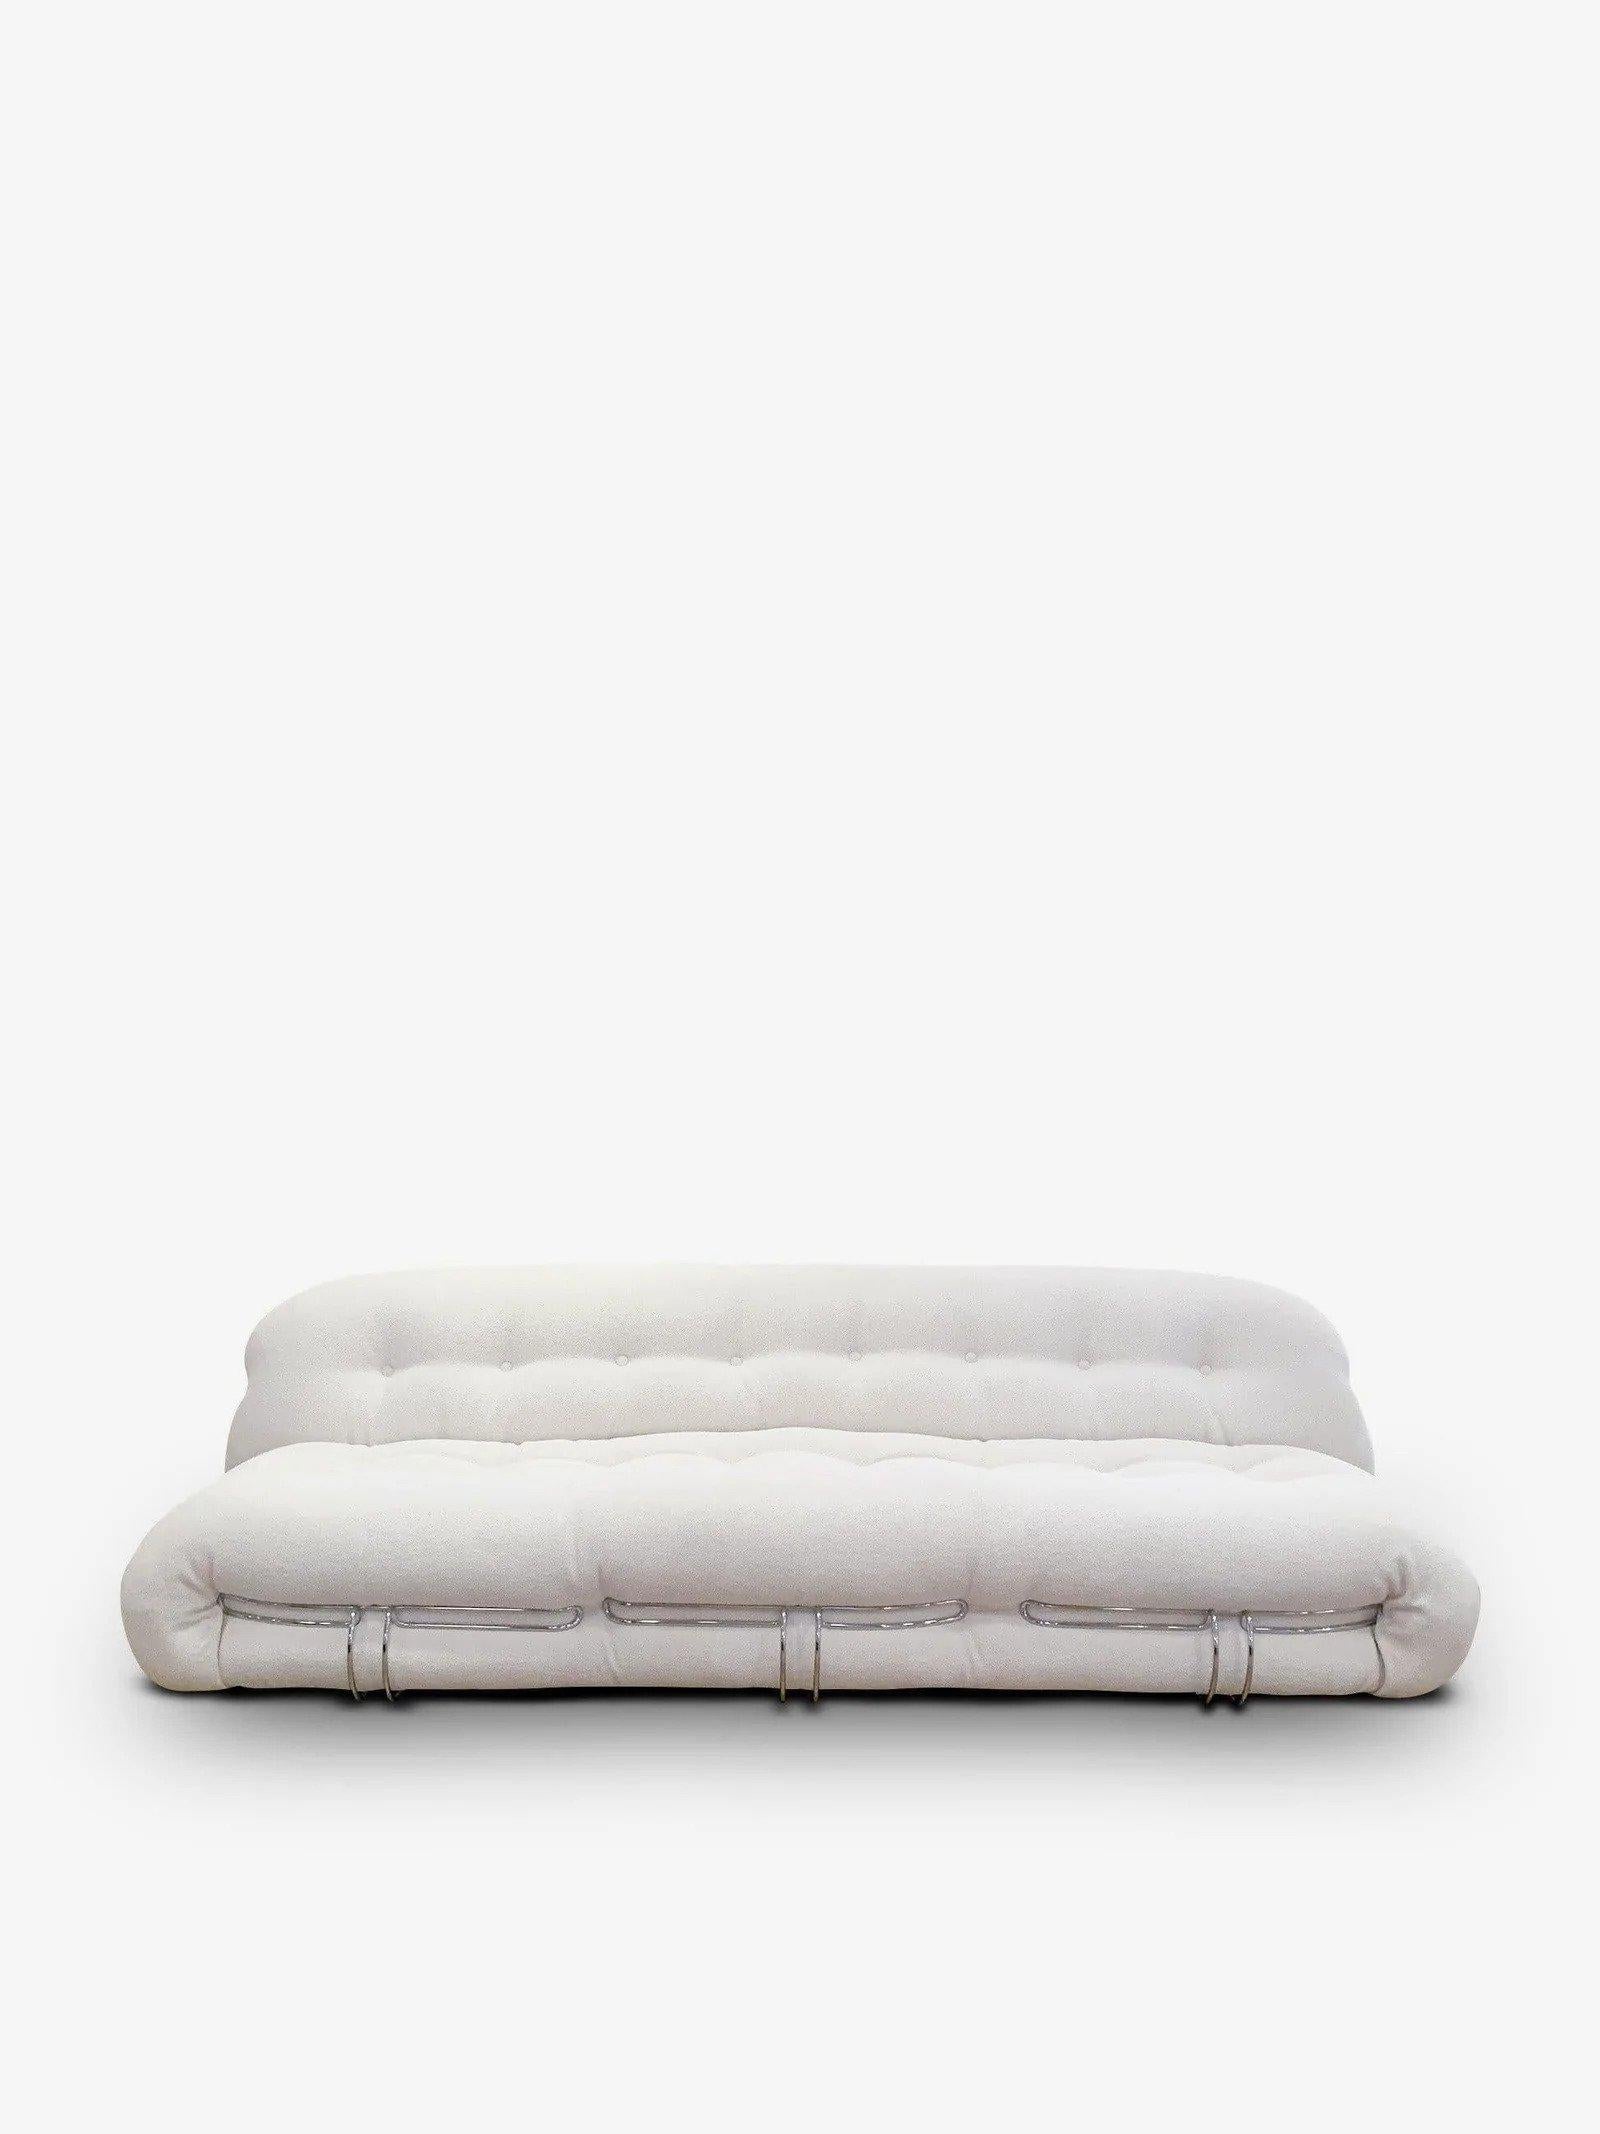 cassina sofa